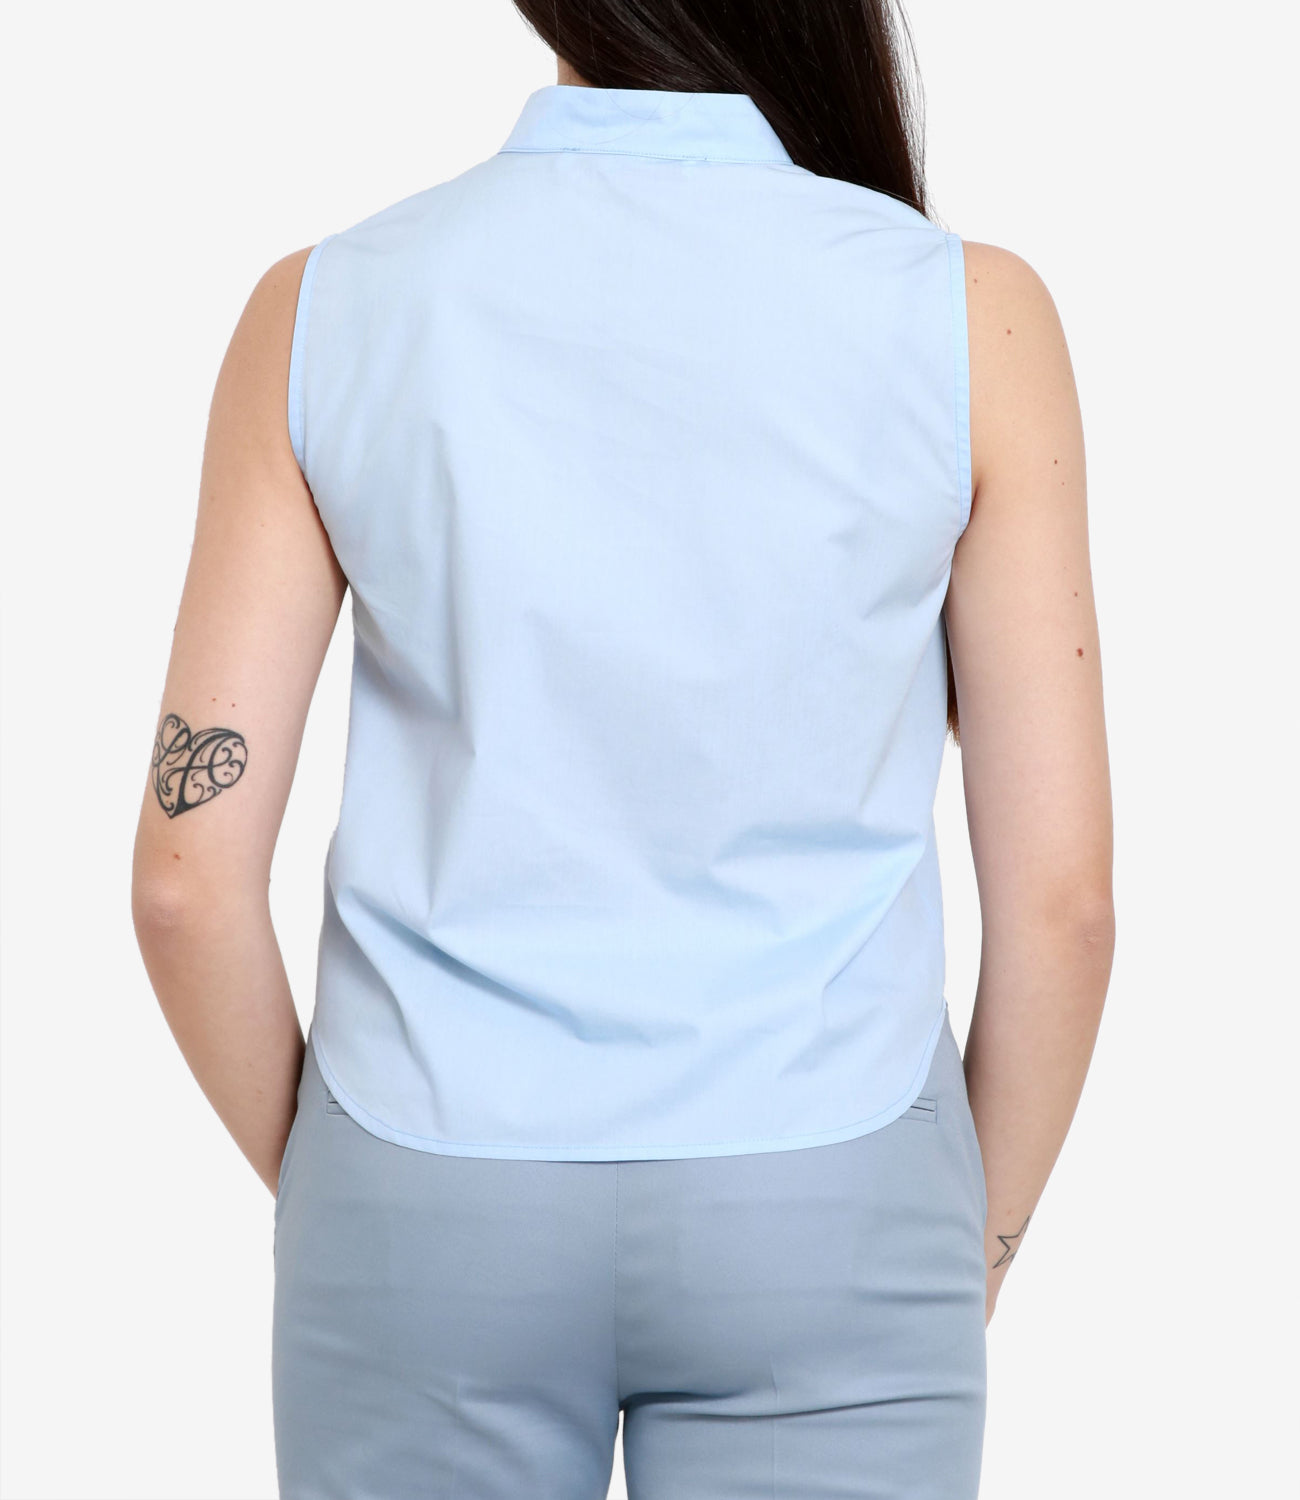 Grifoni | Light Blue Shirt